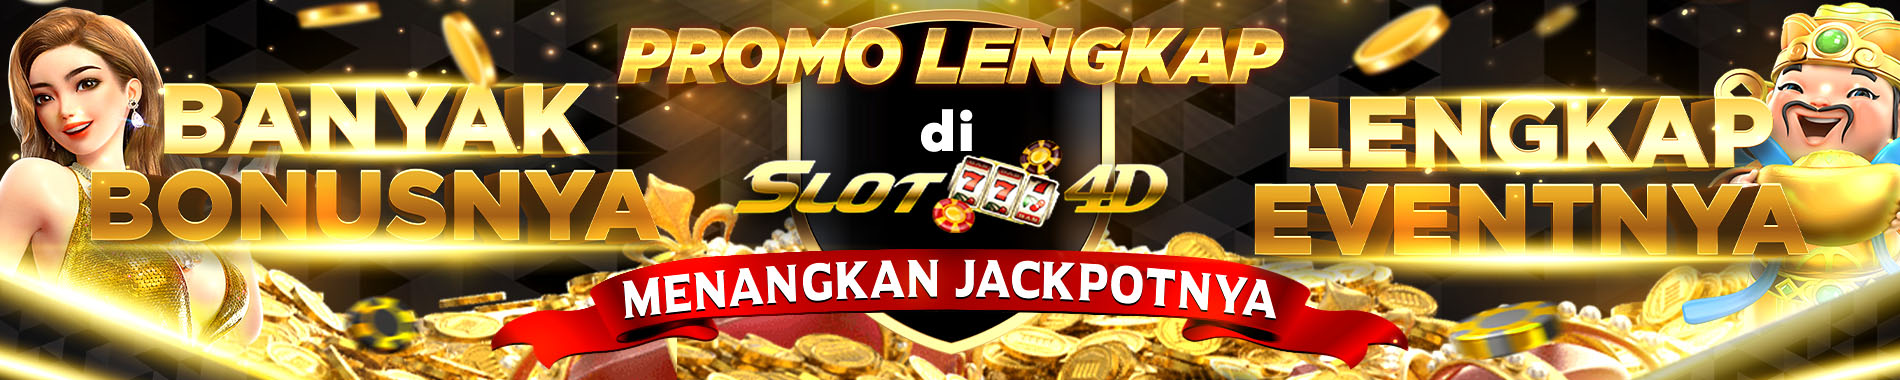 Slot4d Bandar Togel, casino dan slot Indonesia